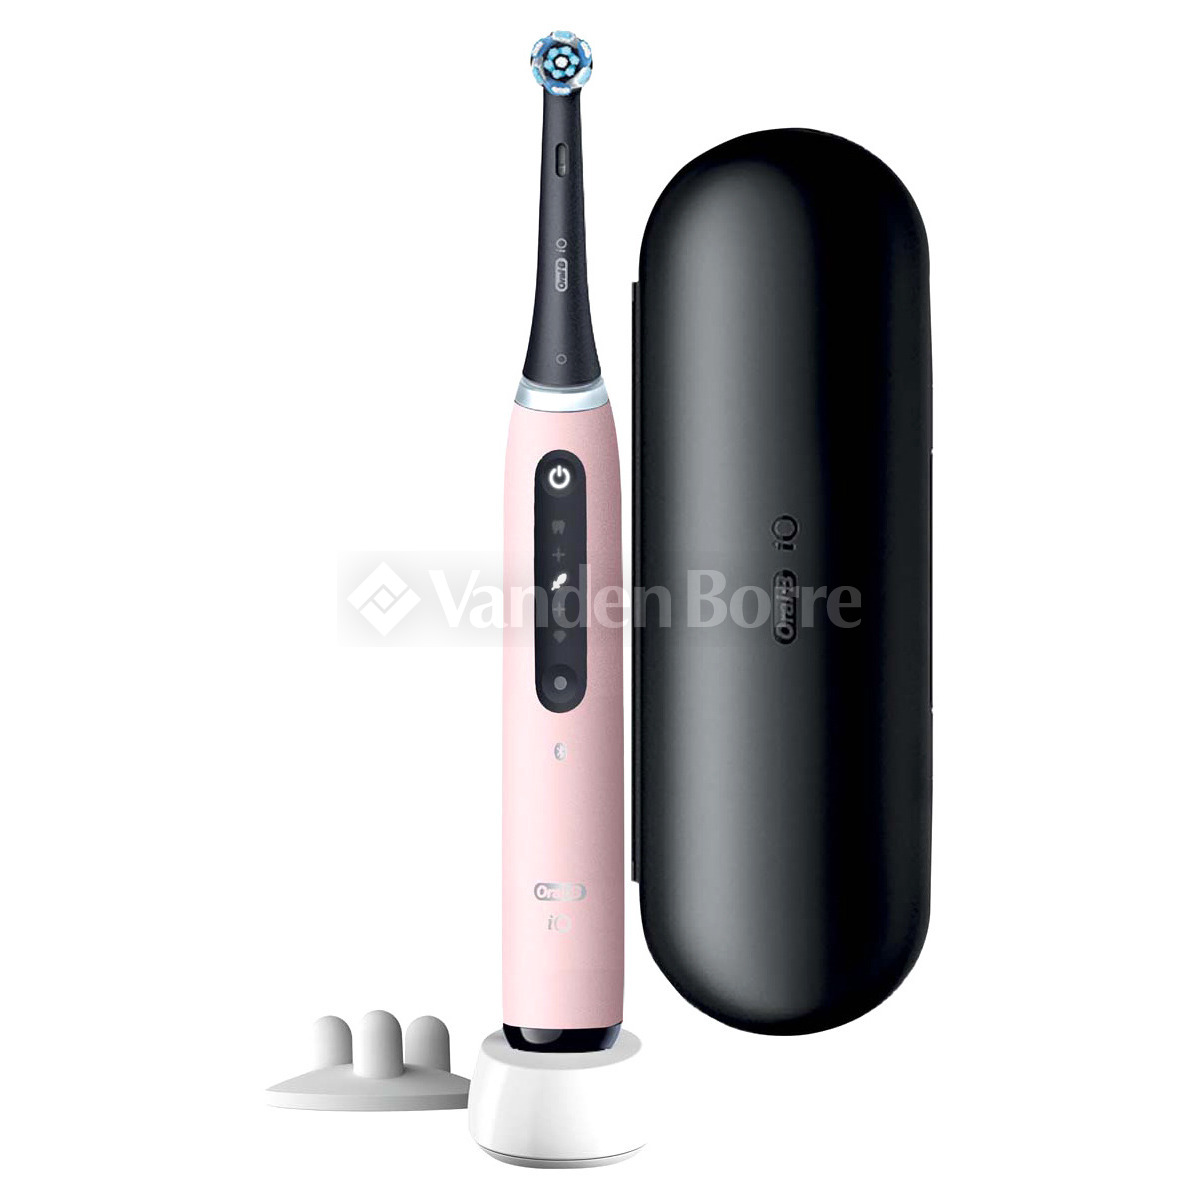 Test Oral-B iO Series 9 : une brosse à dents électrique sous intelligence  artificielle - Les Numériques